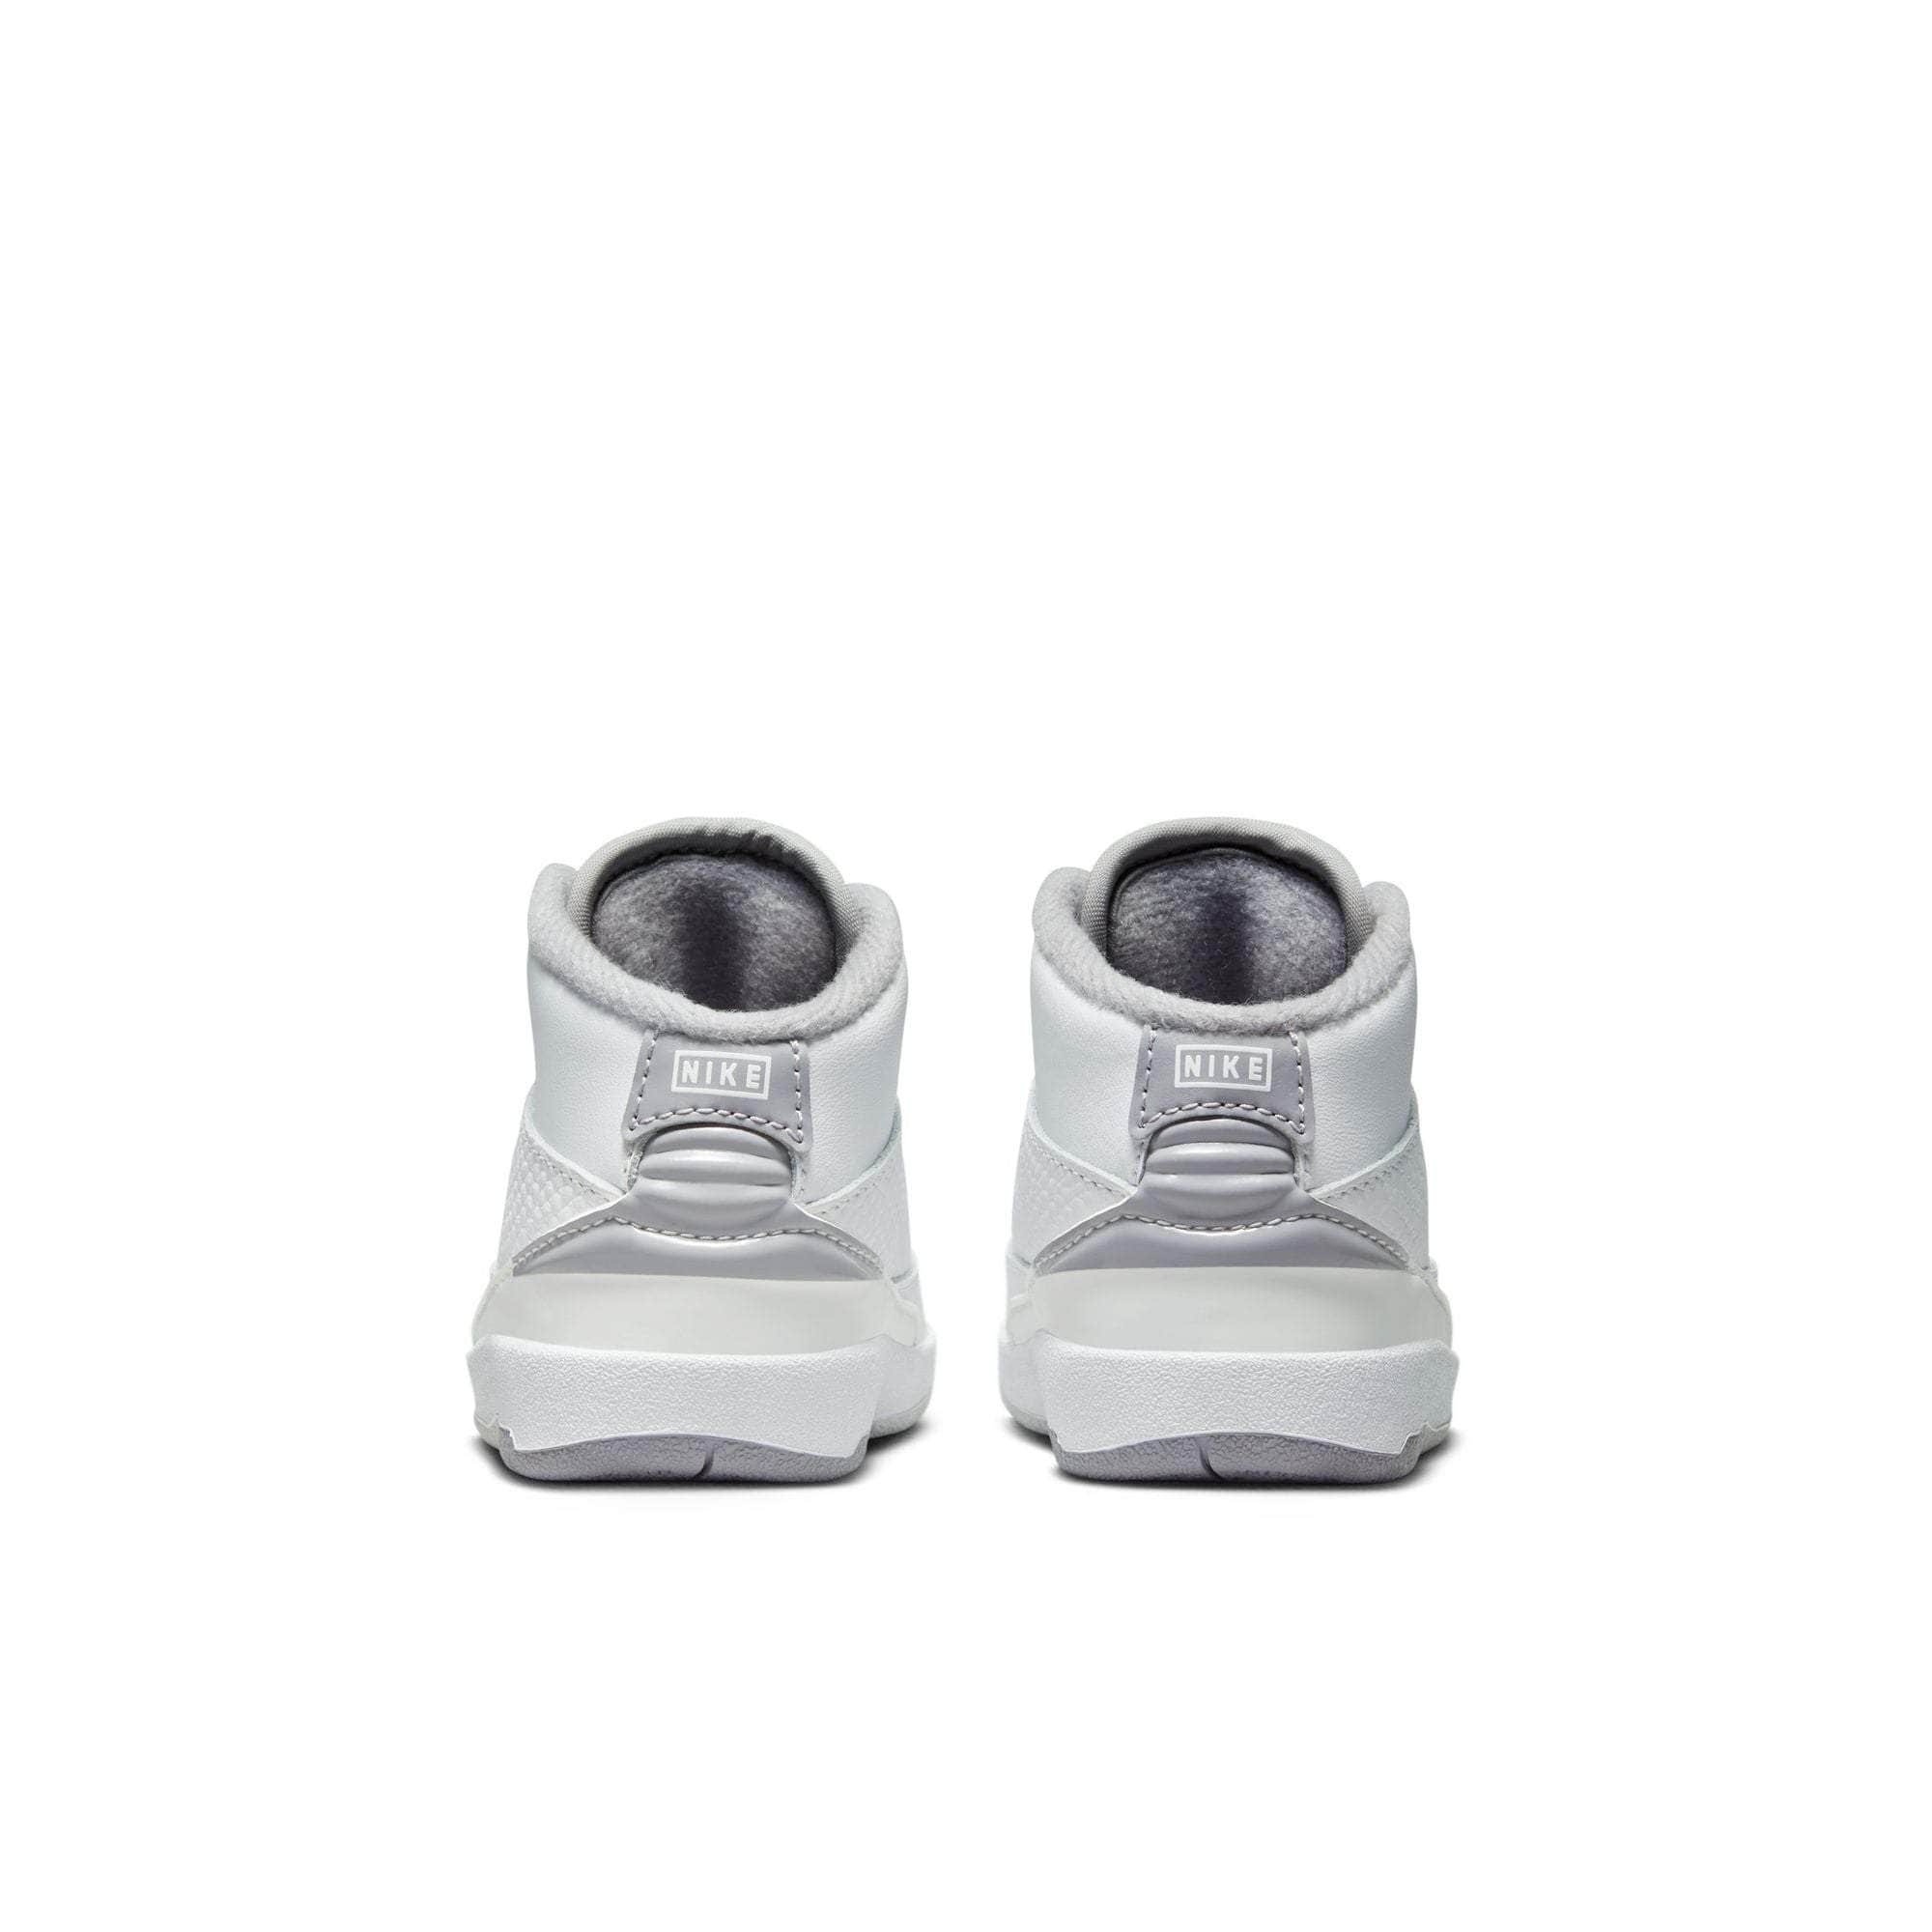 Air Jordan FOOTWEAR Air Jordan 2 Retro "Cement Grey" - Toddler's